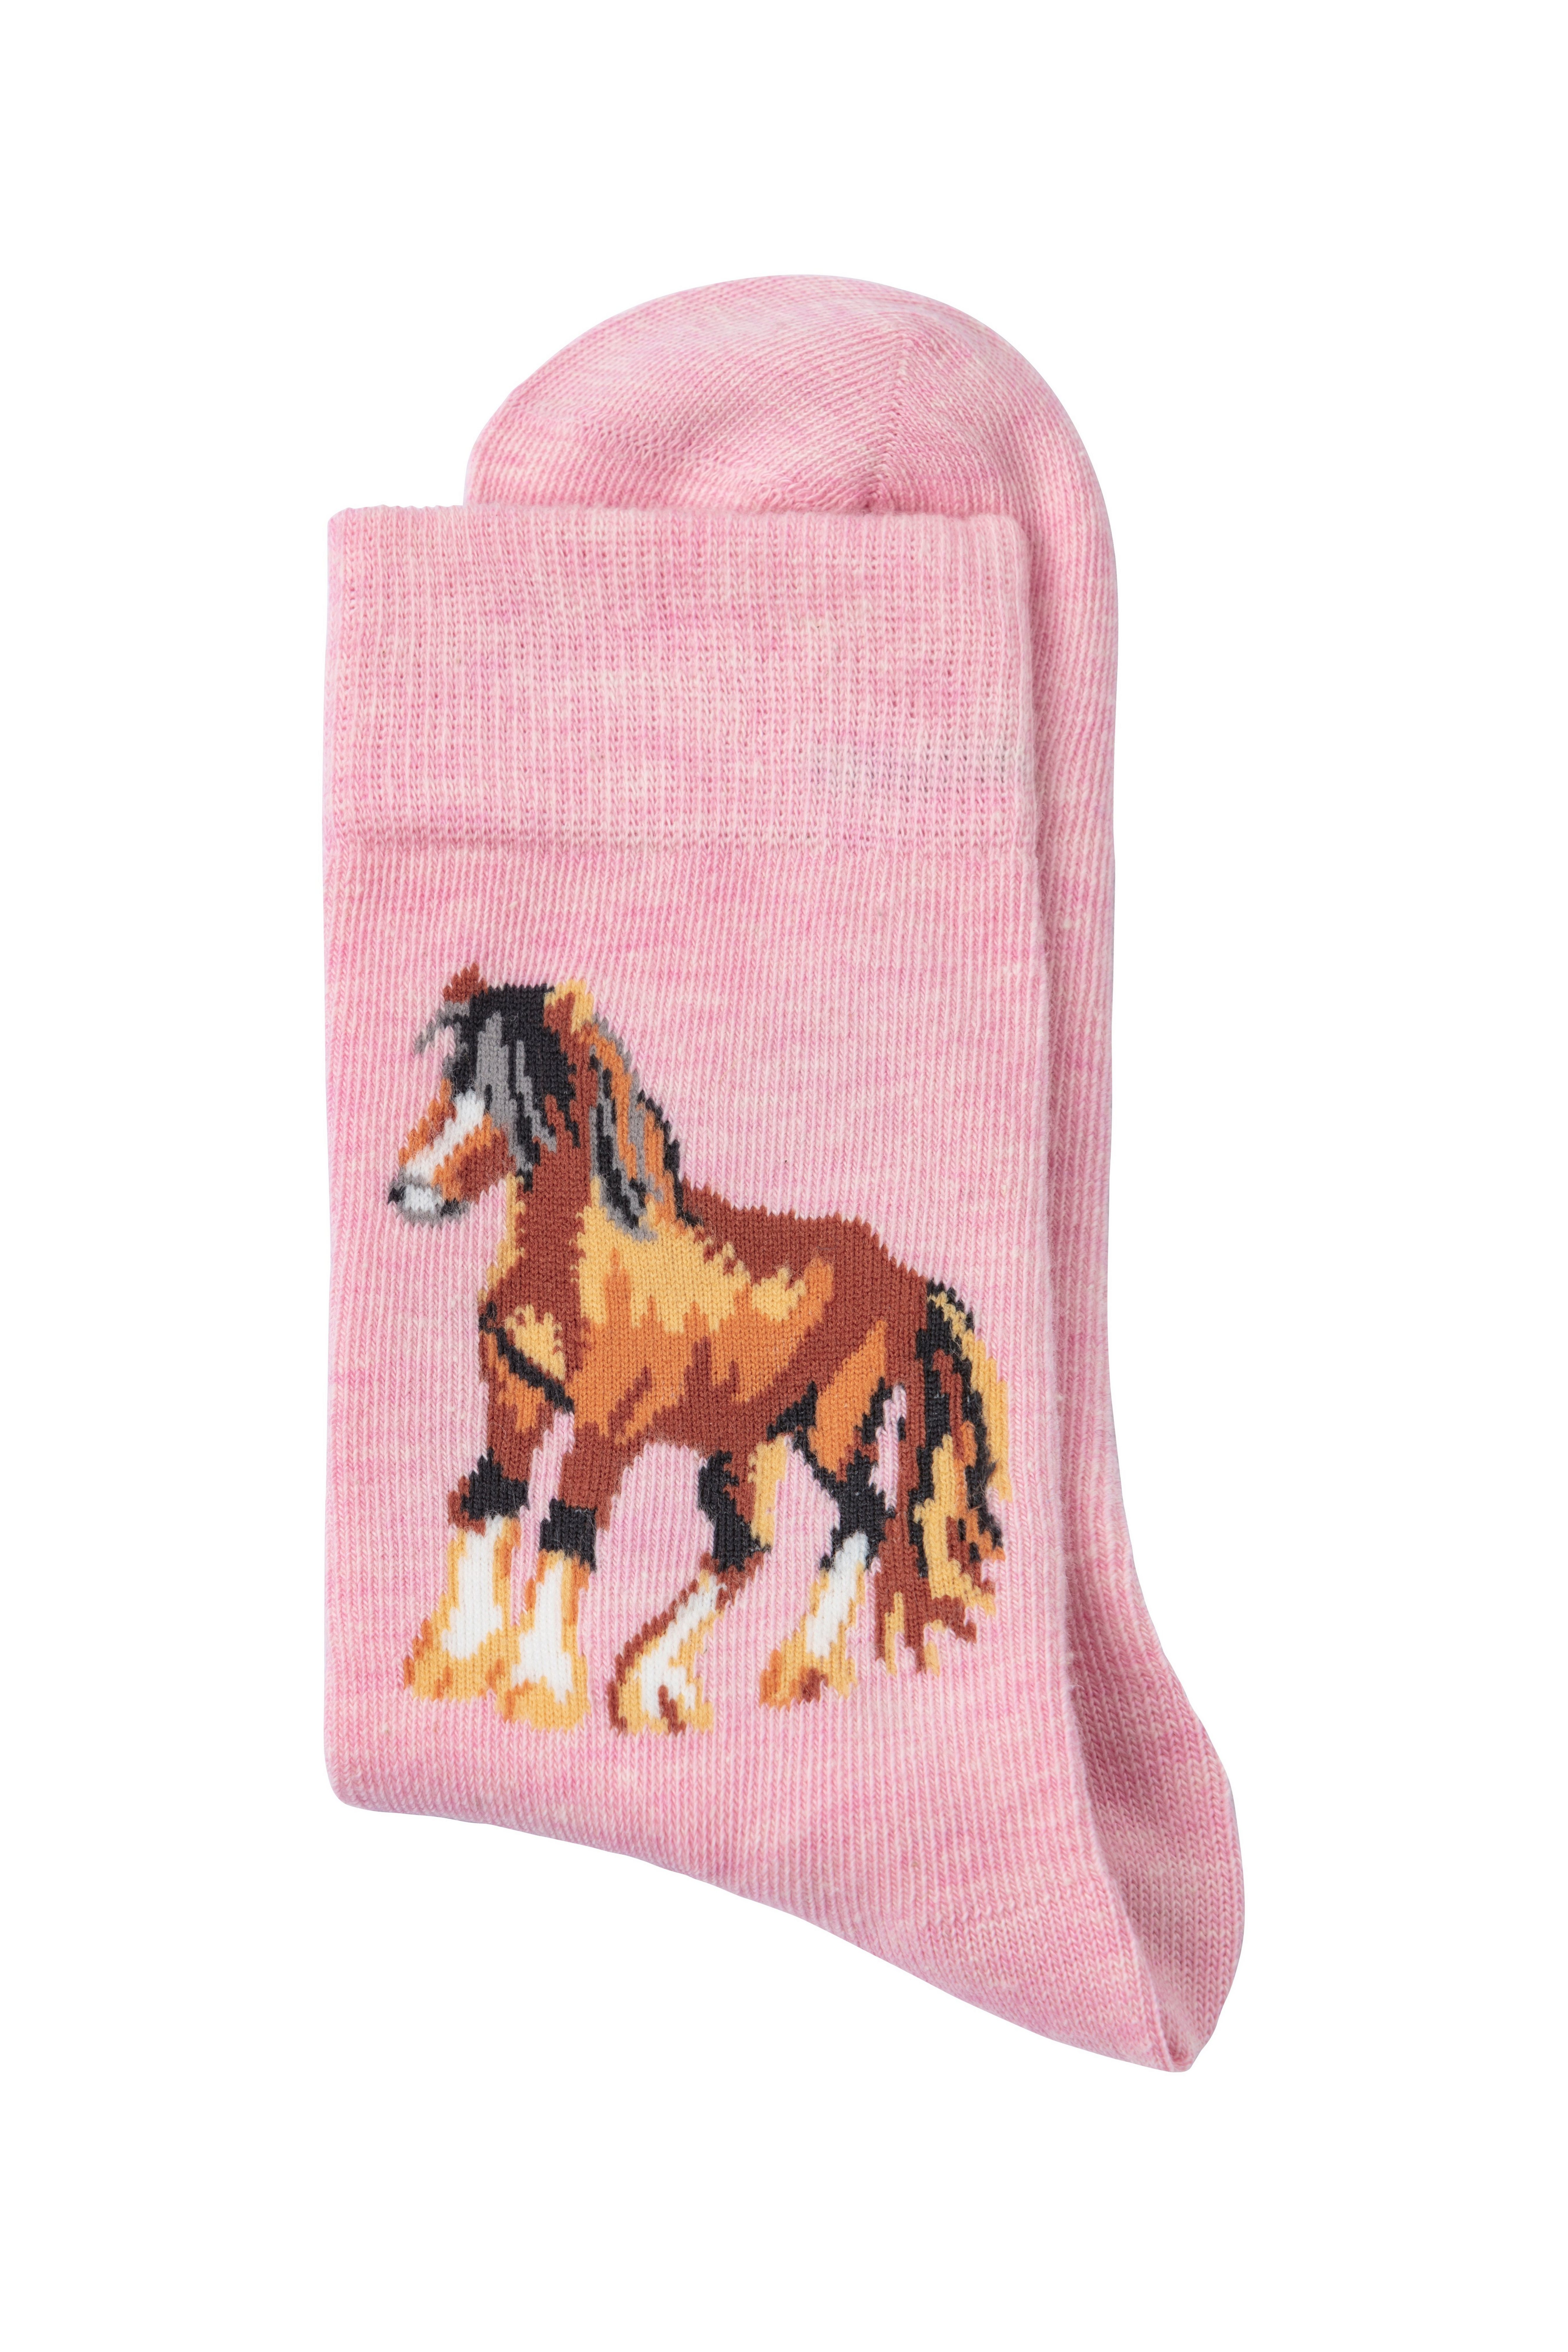 H.I.S Pferdemotiven (5-Paar) unterschiedlichen Socken Mit